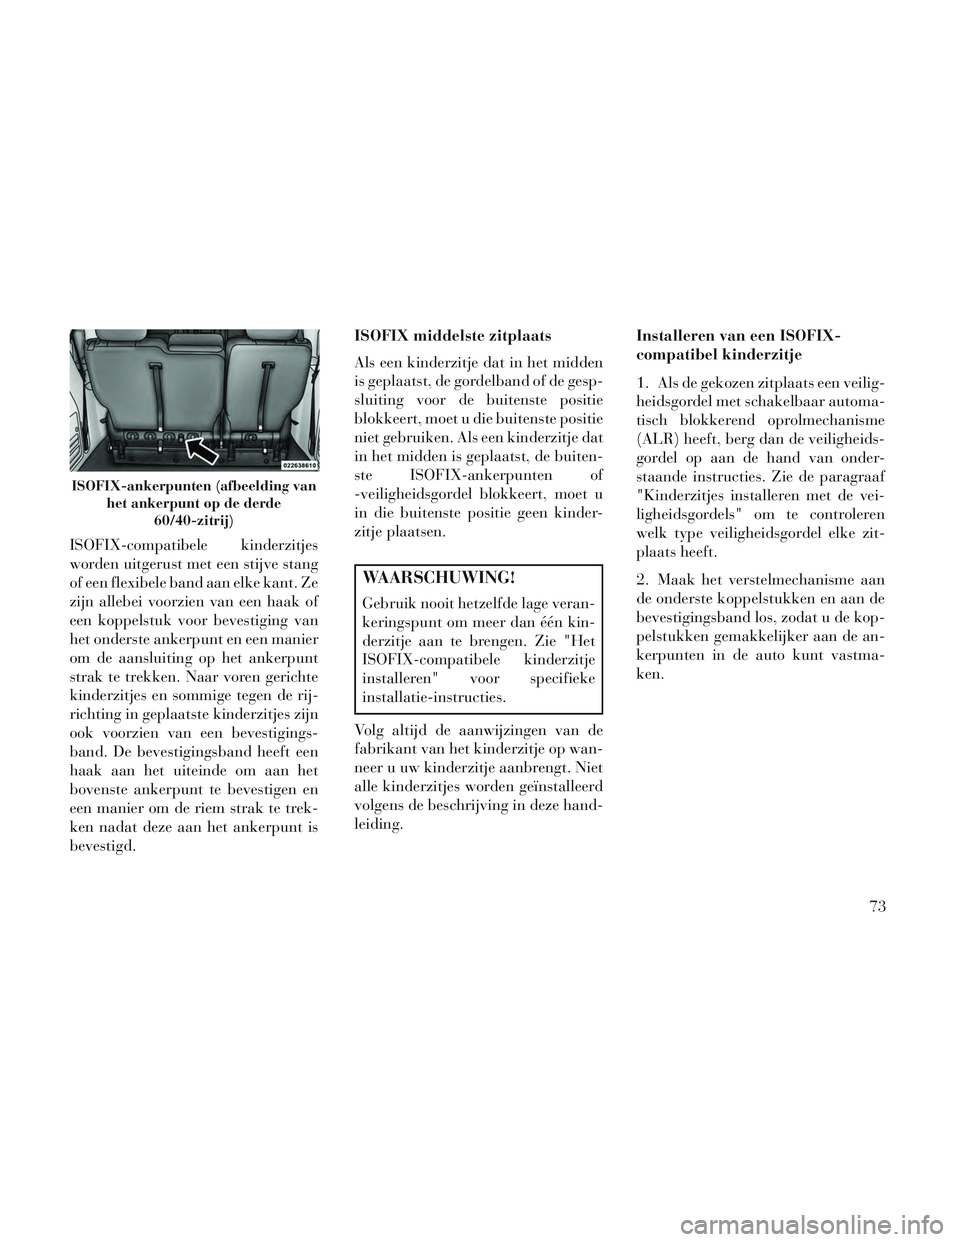 Lancia Voyager 2014  Instructieboek (in Dutch) ISOFIX-compatibele kinderzitjes
worden uitgerust met een stijve stang
of een flexibele band aan elke kant. Ze
zijn allebei voorzien van een haak of
een koppelstuk voor bevestiging van
het onderste ank